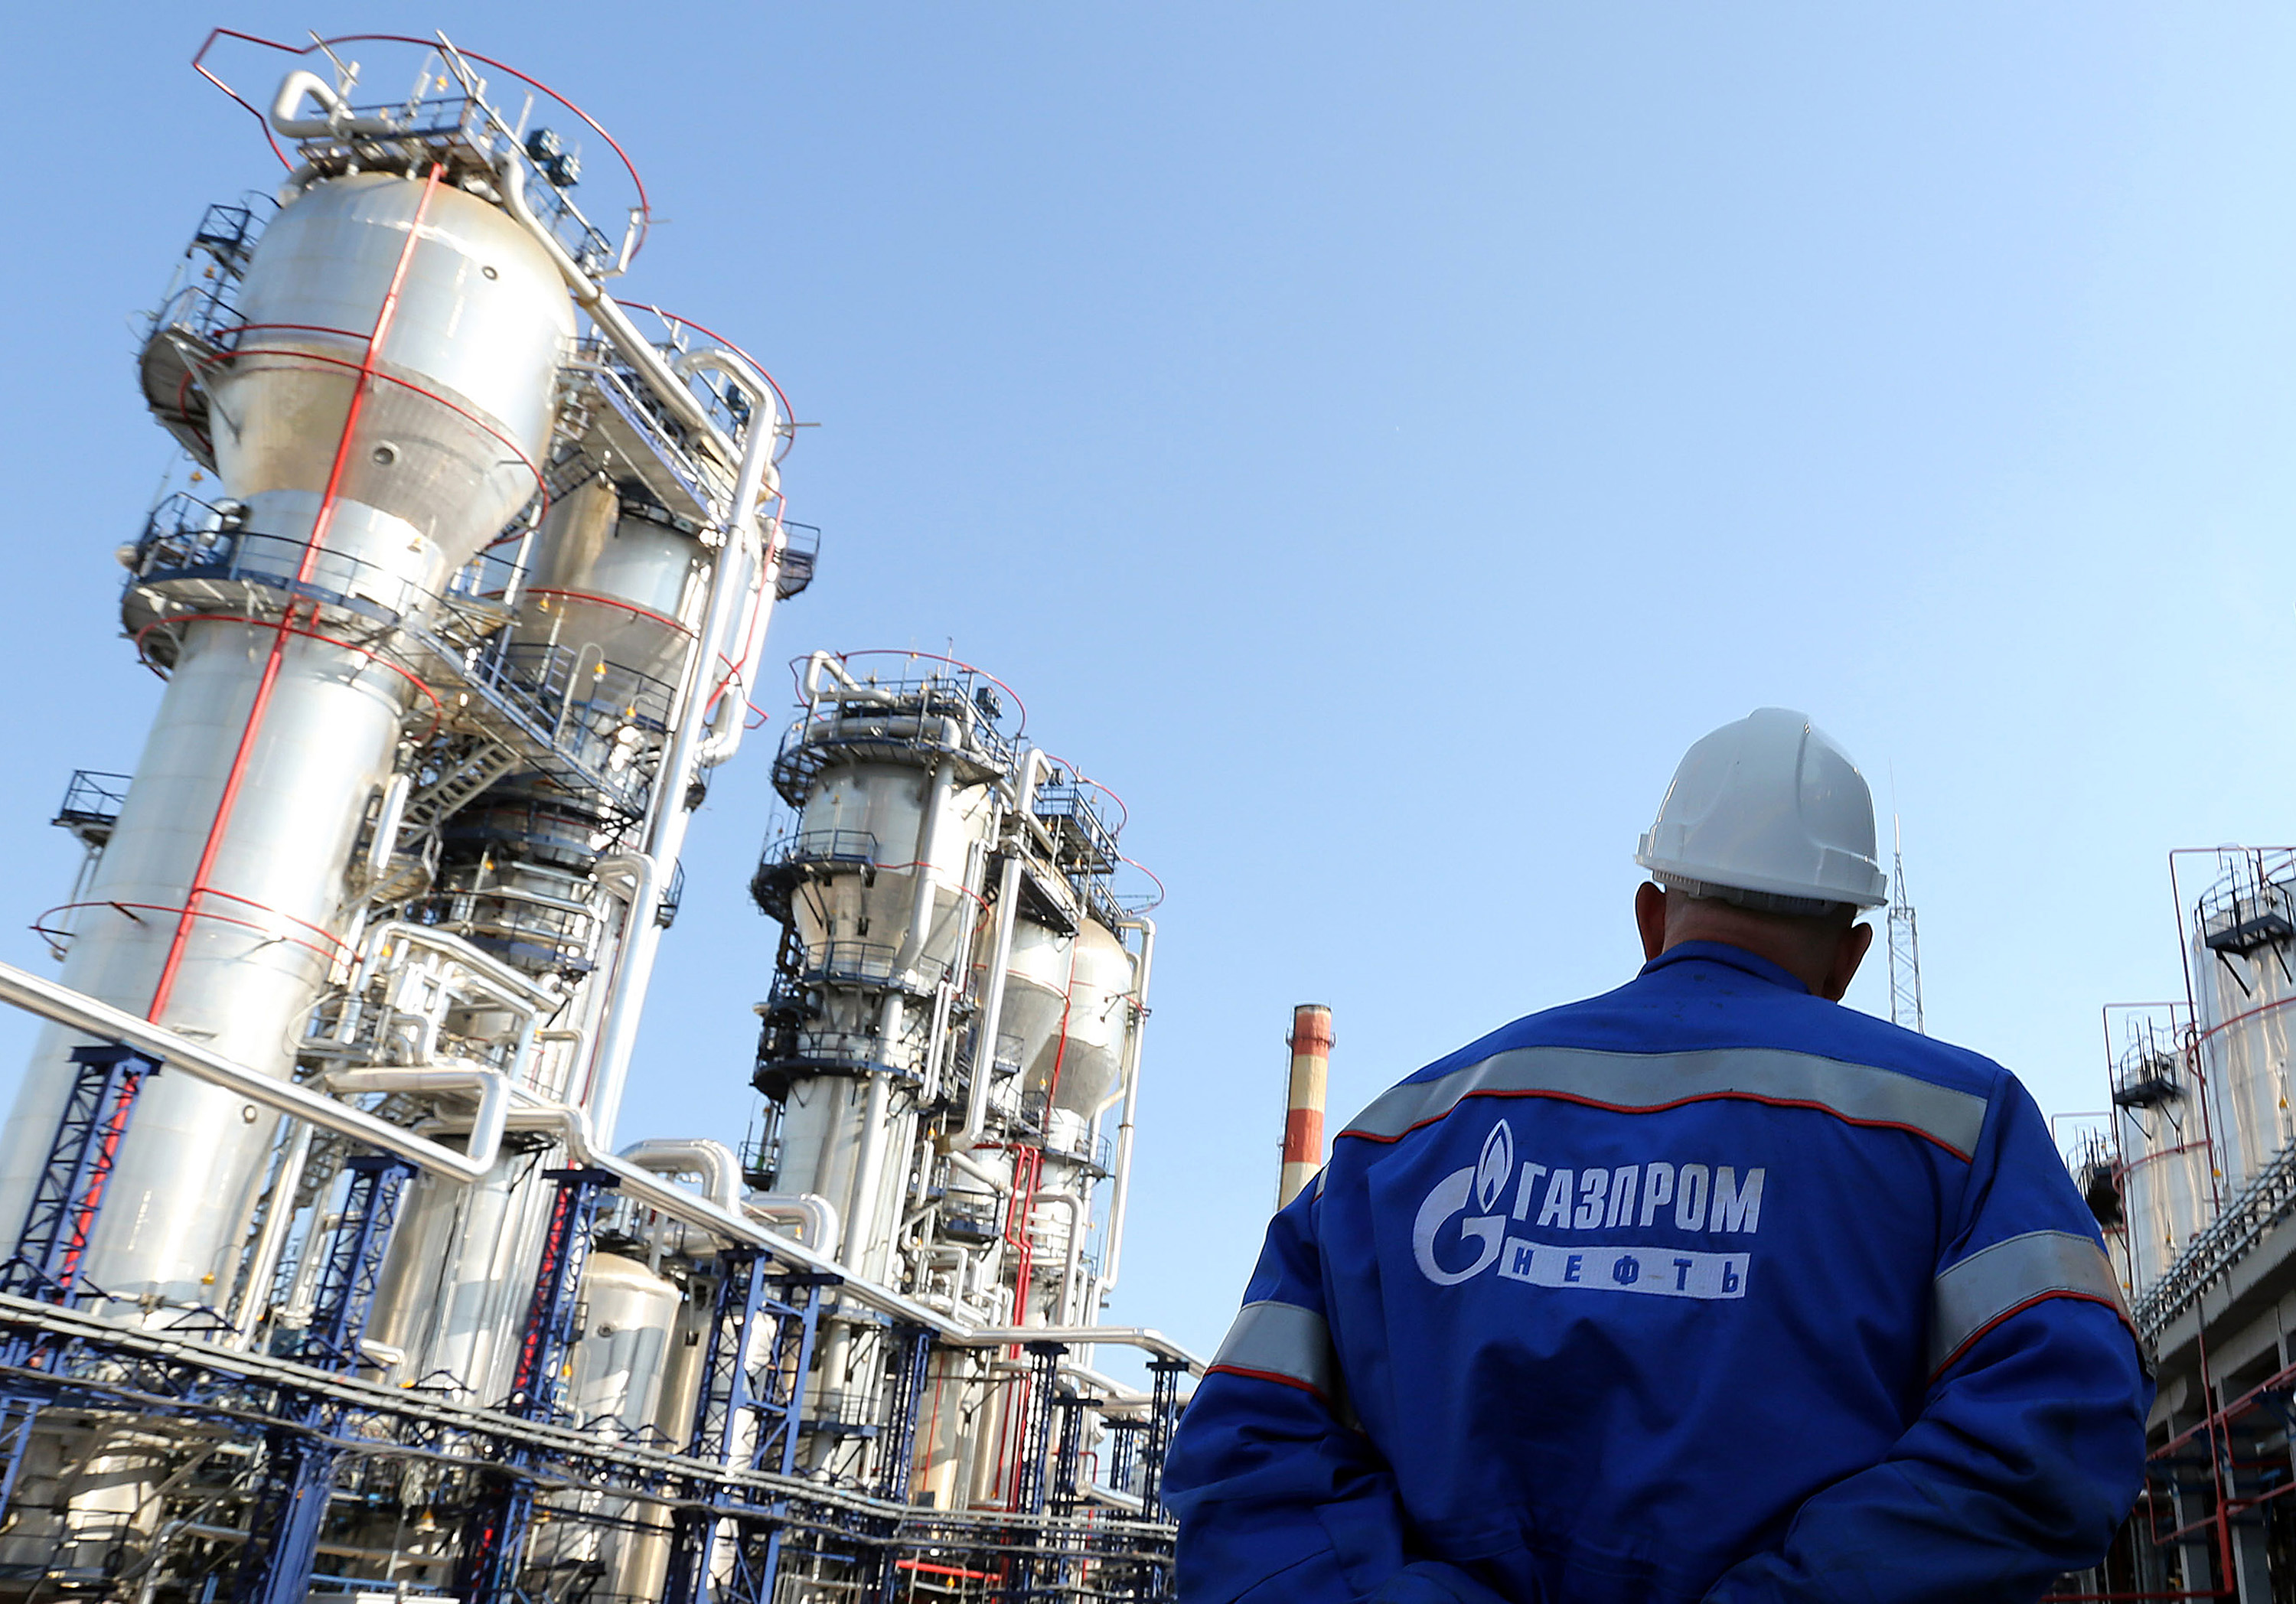 Gazprom, yarından itibaren Finlandiya’ya gaz sevkiyatını durduracak